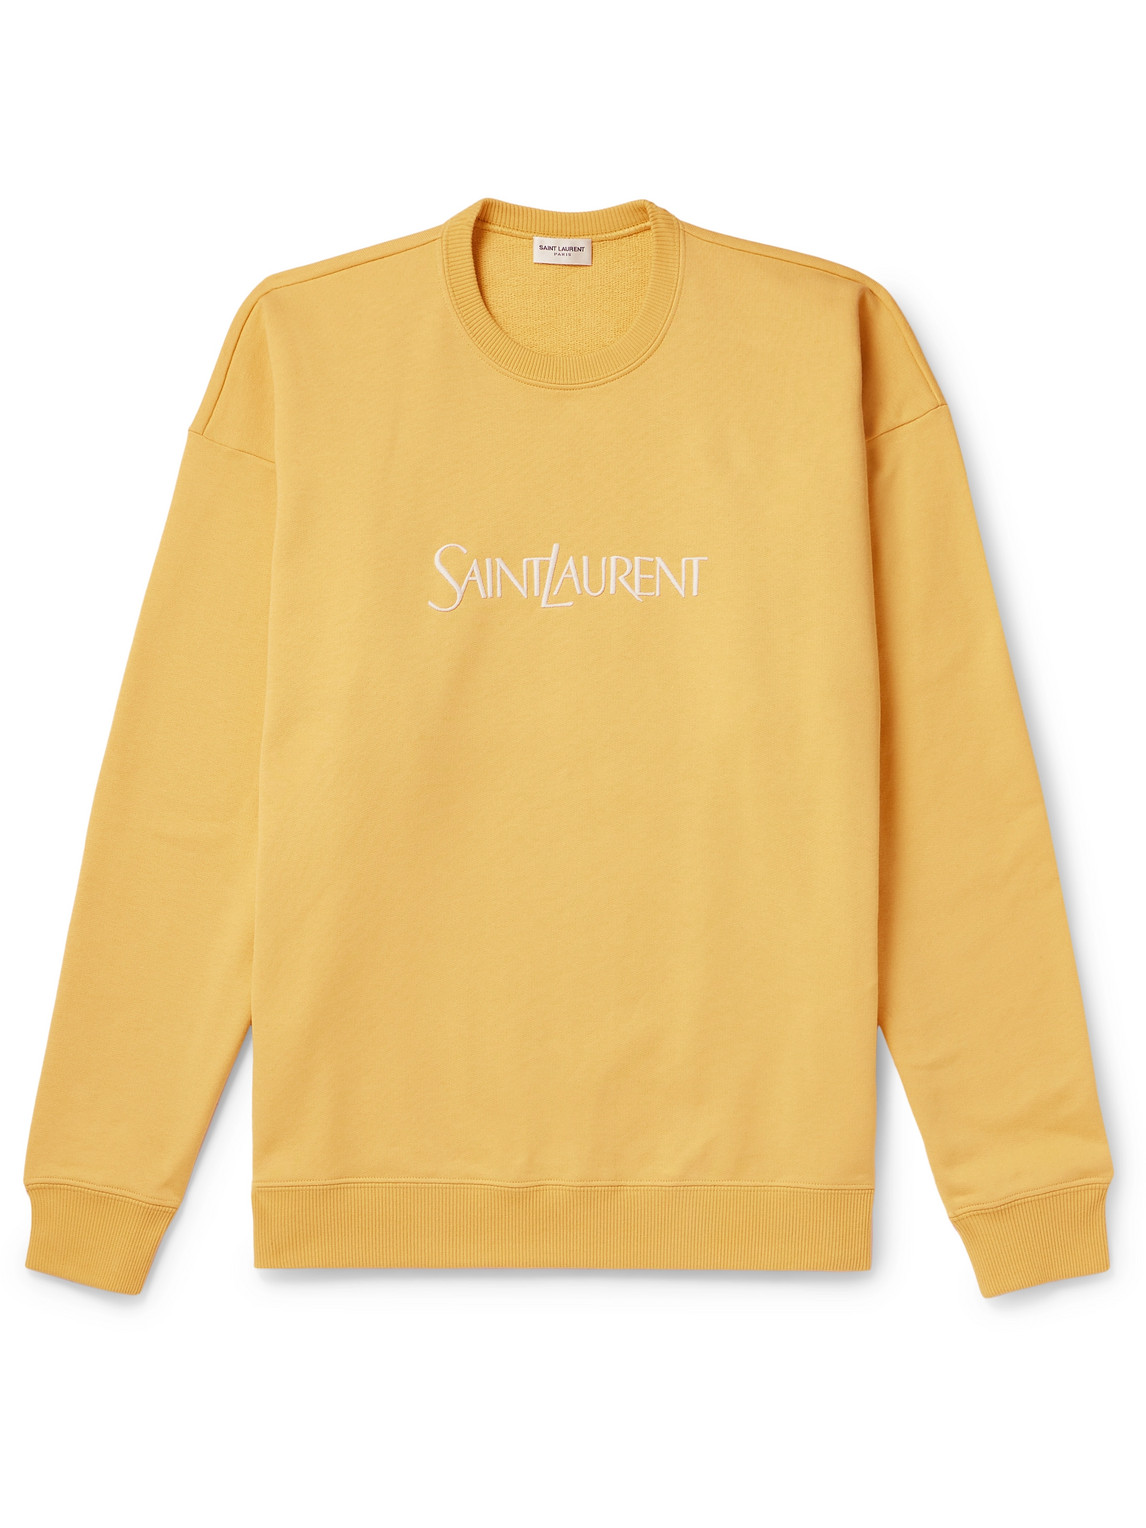 SAINT LAURENT - Logo-Embroidered Cotton-Jersey Sweatshirt - Men - Yellow - M von SAINT LAURENT